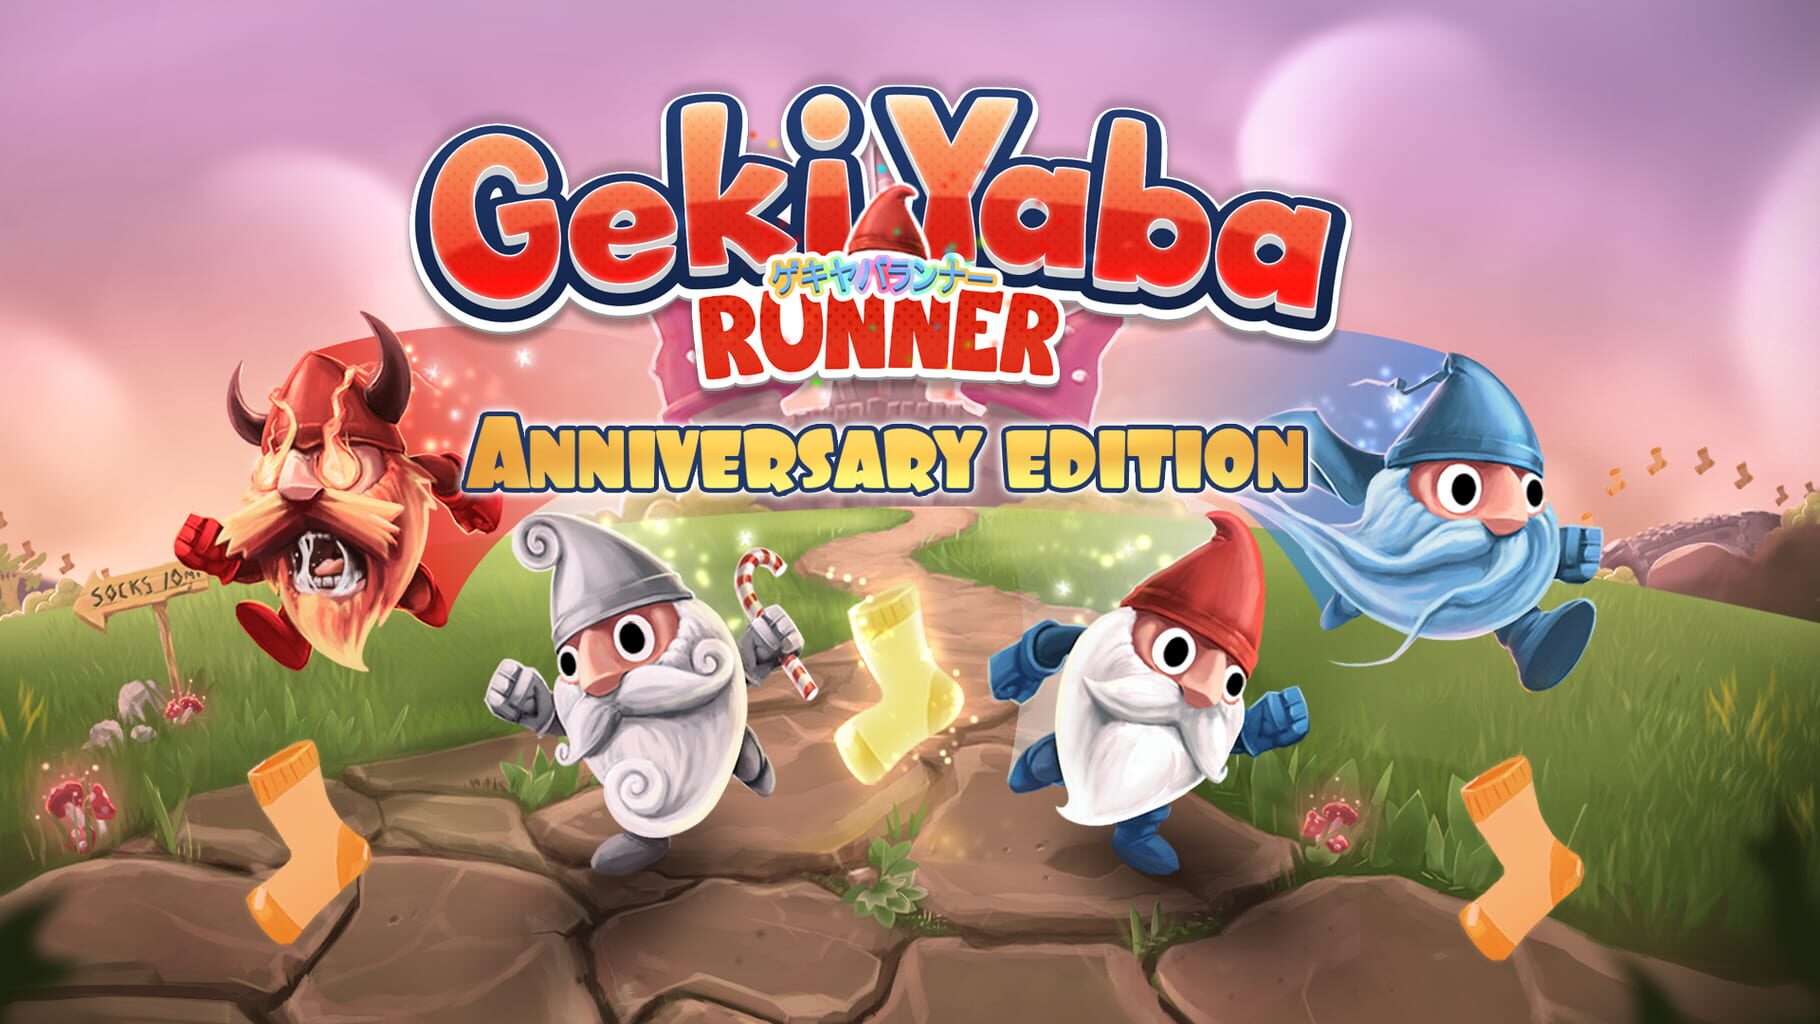 Geki Yaba Runner: Anniversary Edition artwork